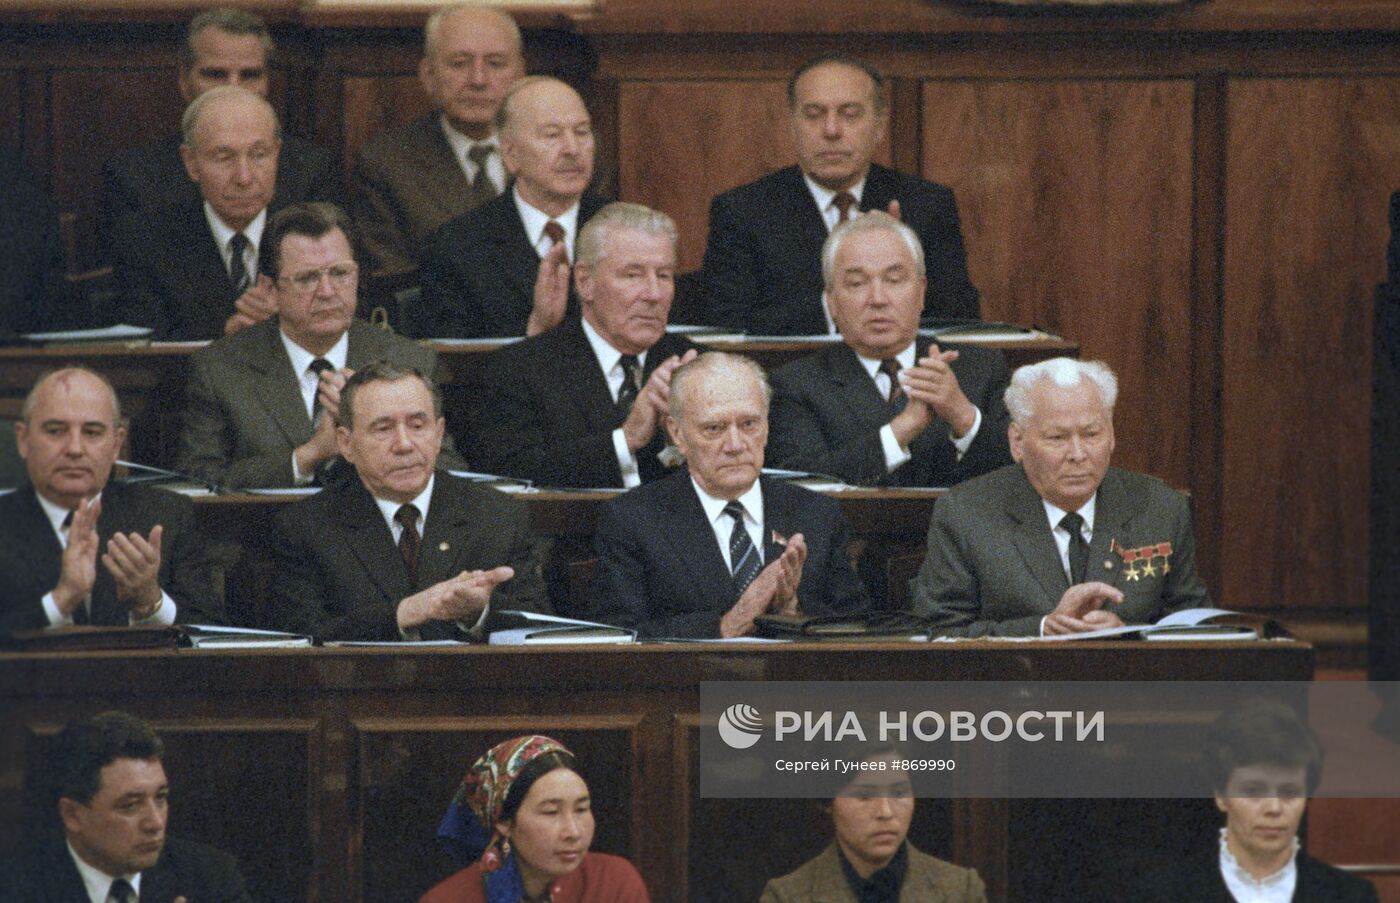 Вторая сессия Верховного Совета СССР 11 созыва